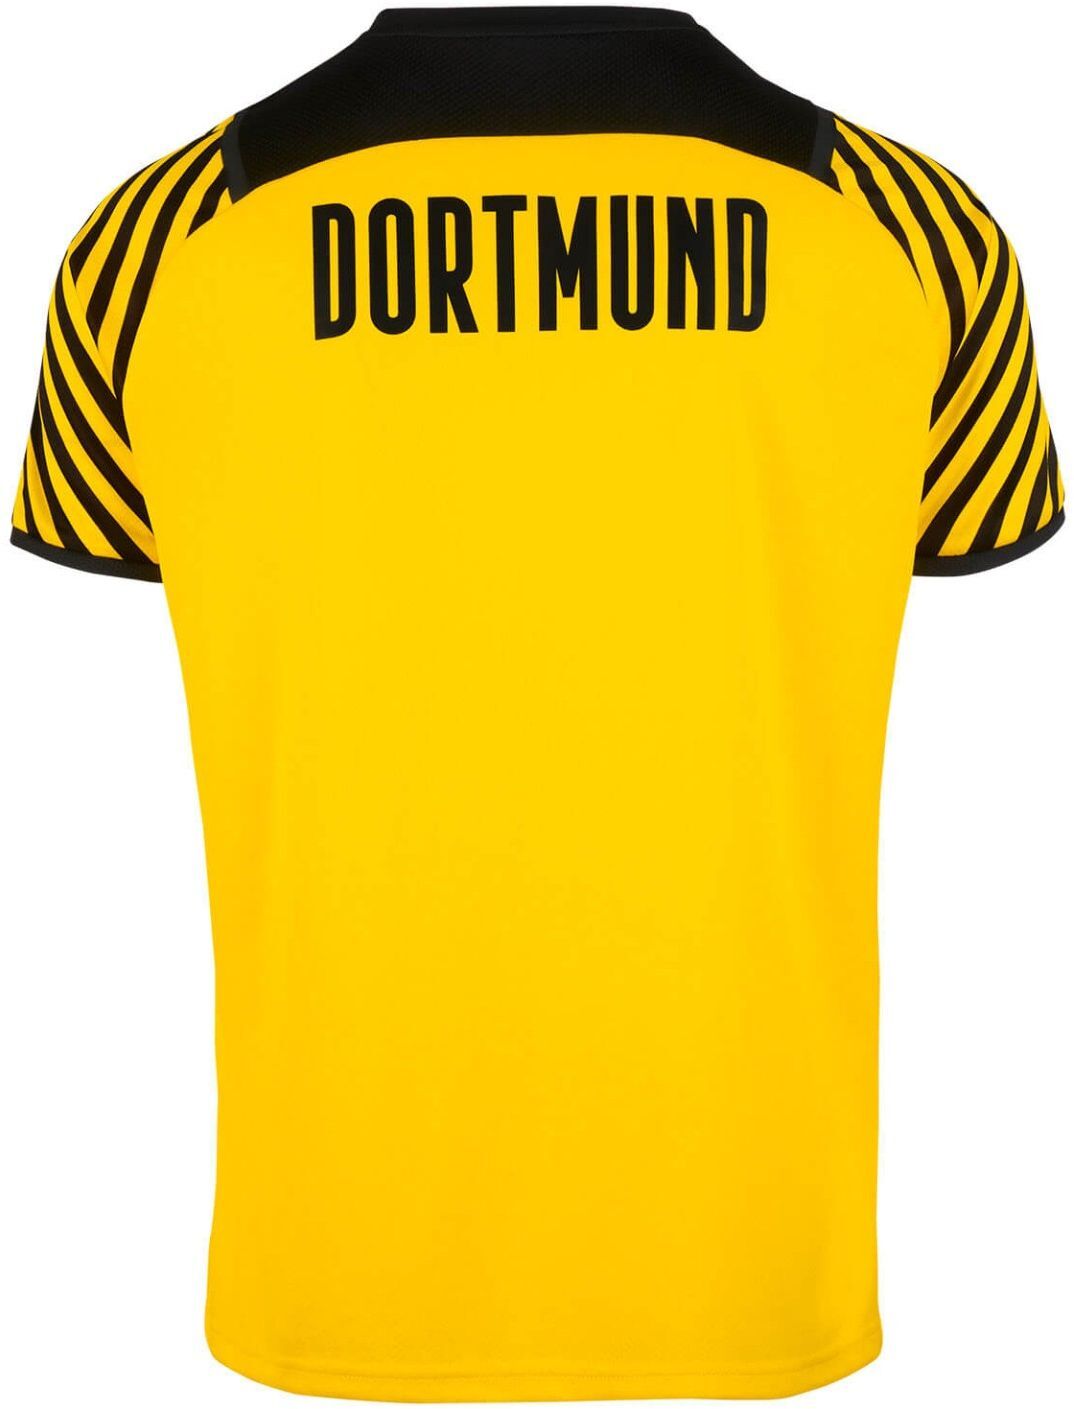 Borussia Dortmund thuisshirt seizoen 2021/2022